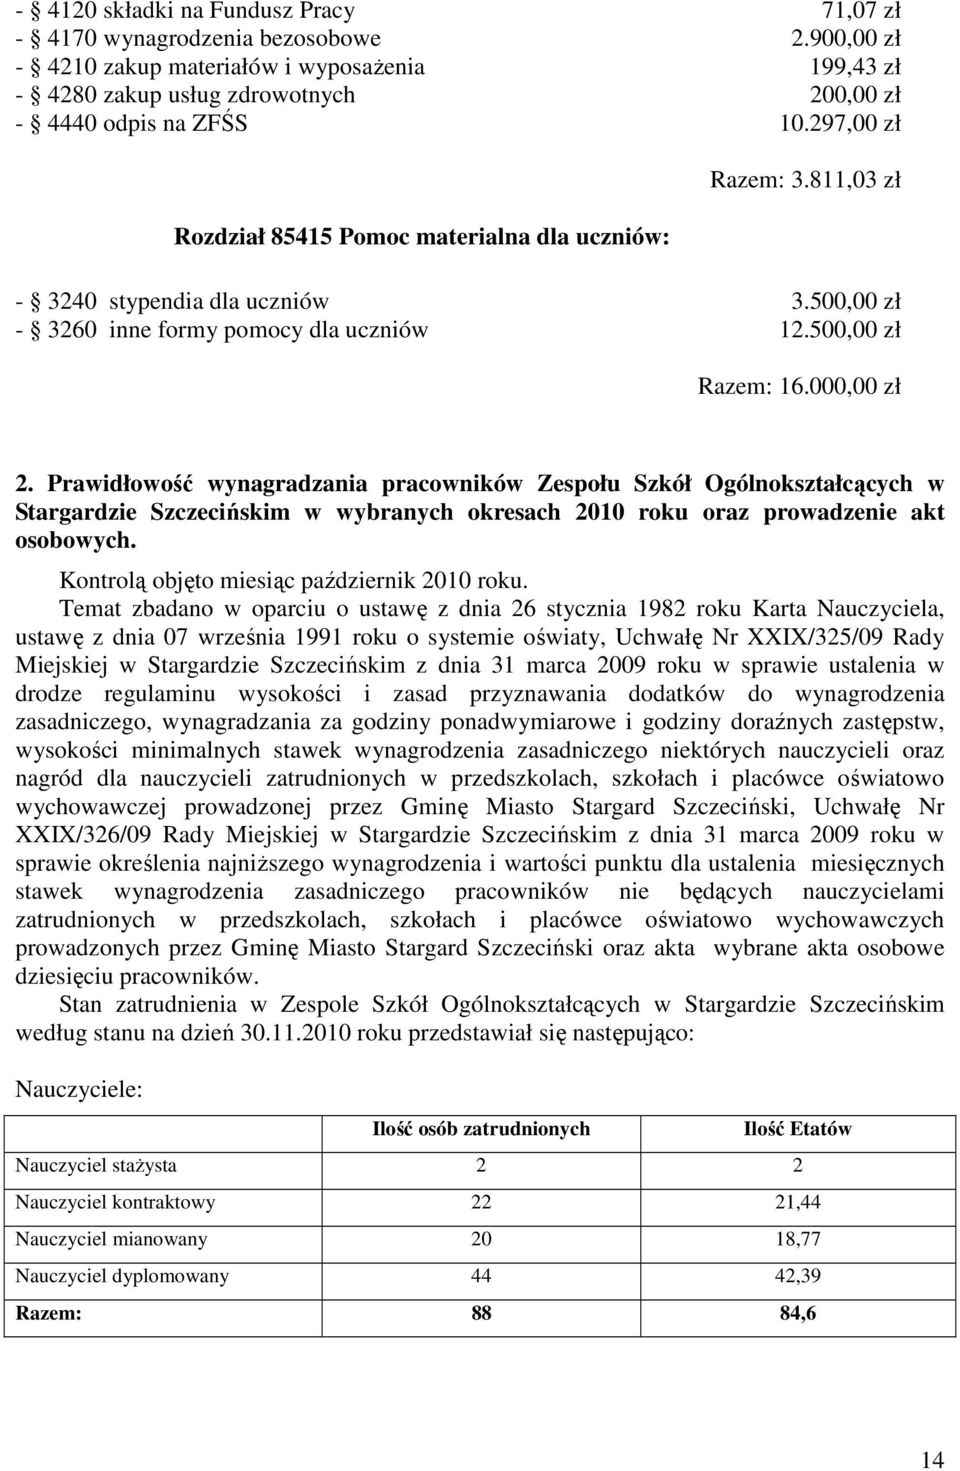 Prawidłowość wynagradzania pracowników Zespołu Szkół Ogólnokształcących w Stargardzie Szczecińskim w wybranych okresach 2010 roku oraz prowadzenie akt osobowych.